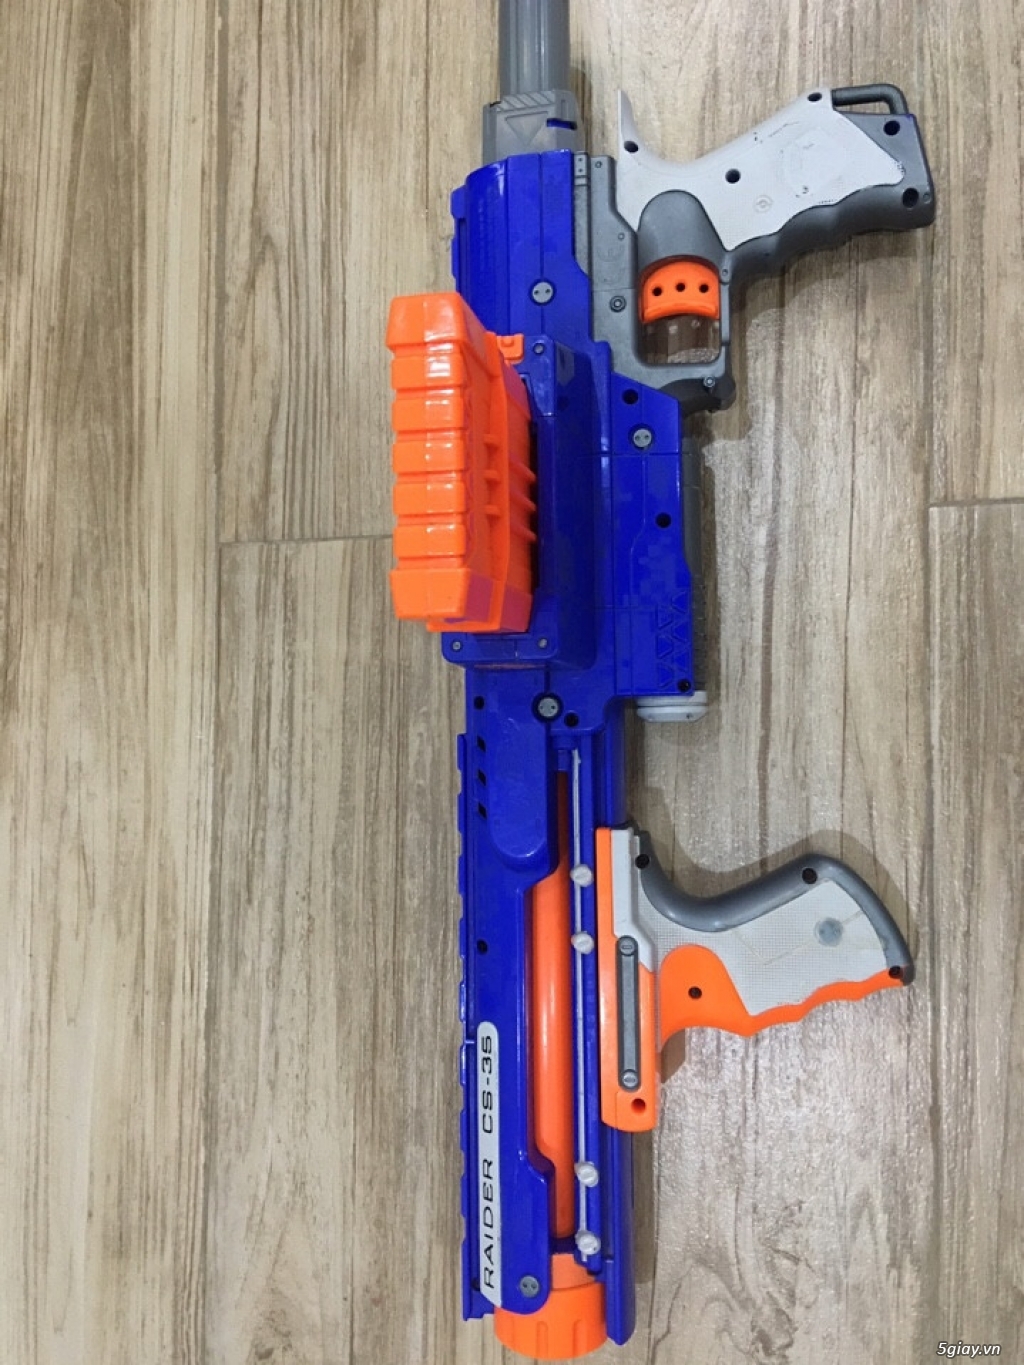 Nerf gun đồ chơi an toàn từ USA, Giá Rẻ!!! | 5giay